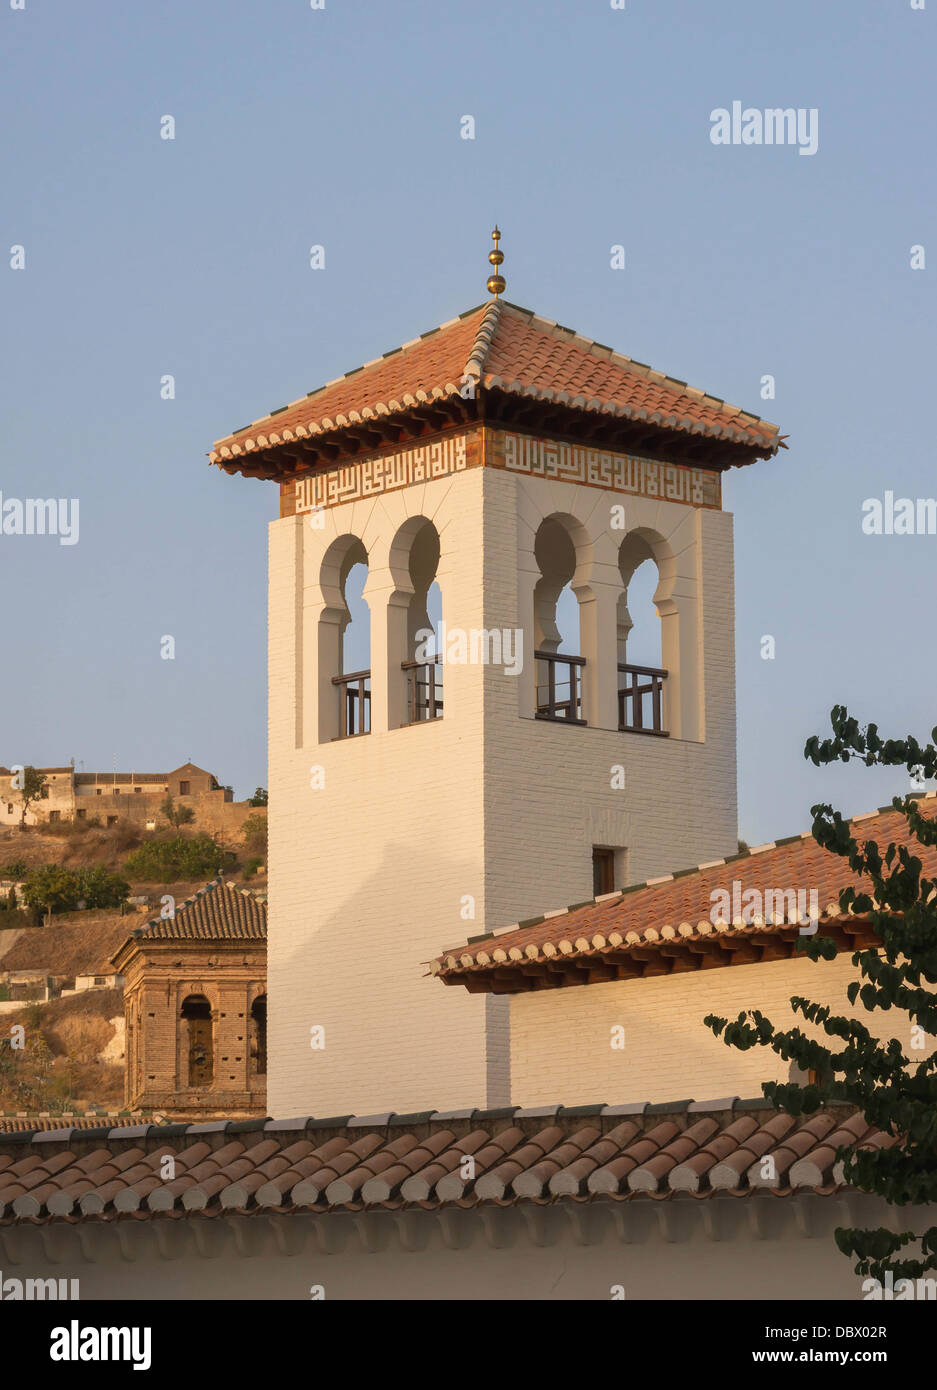 El minarete de la mezquita actual de Granada, España. Foto de stock